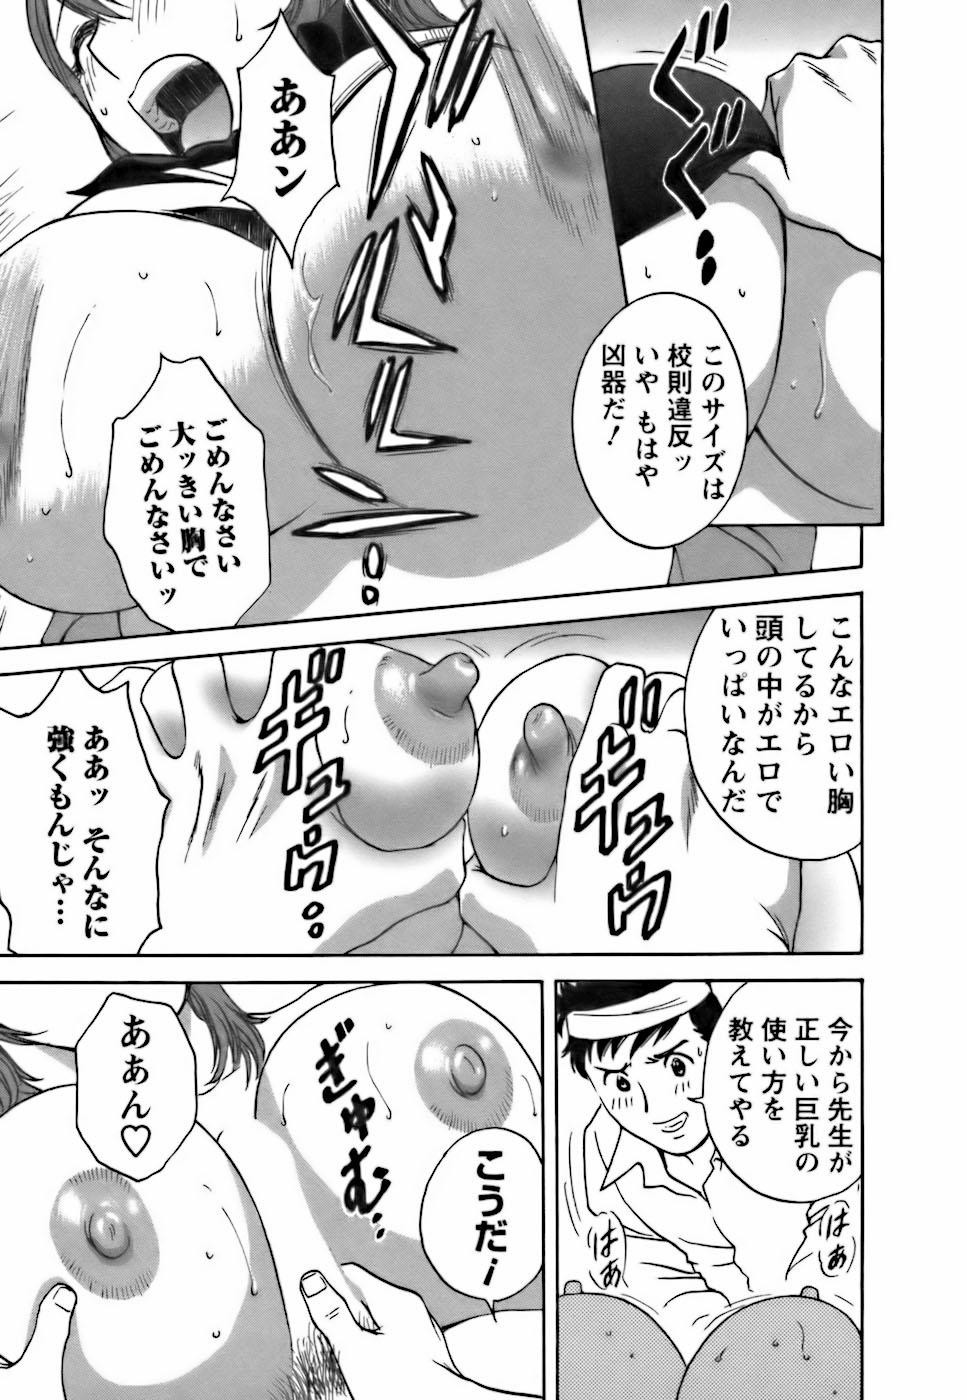 [Hidemaru] Mo-Retsu! Boin Sensei (Boing Boing Teacher) Vol.3 120